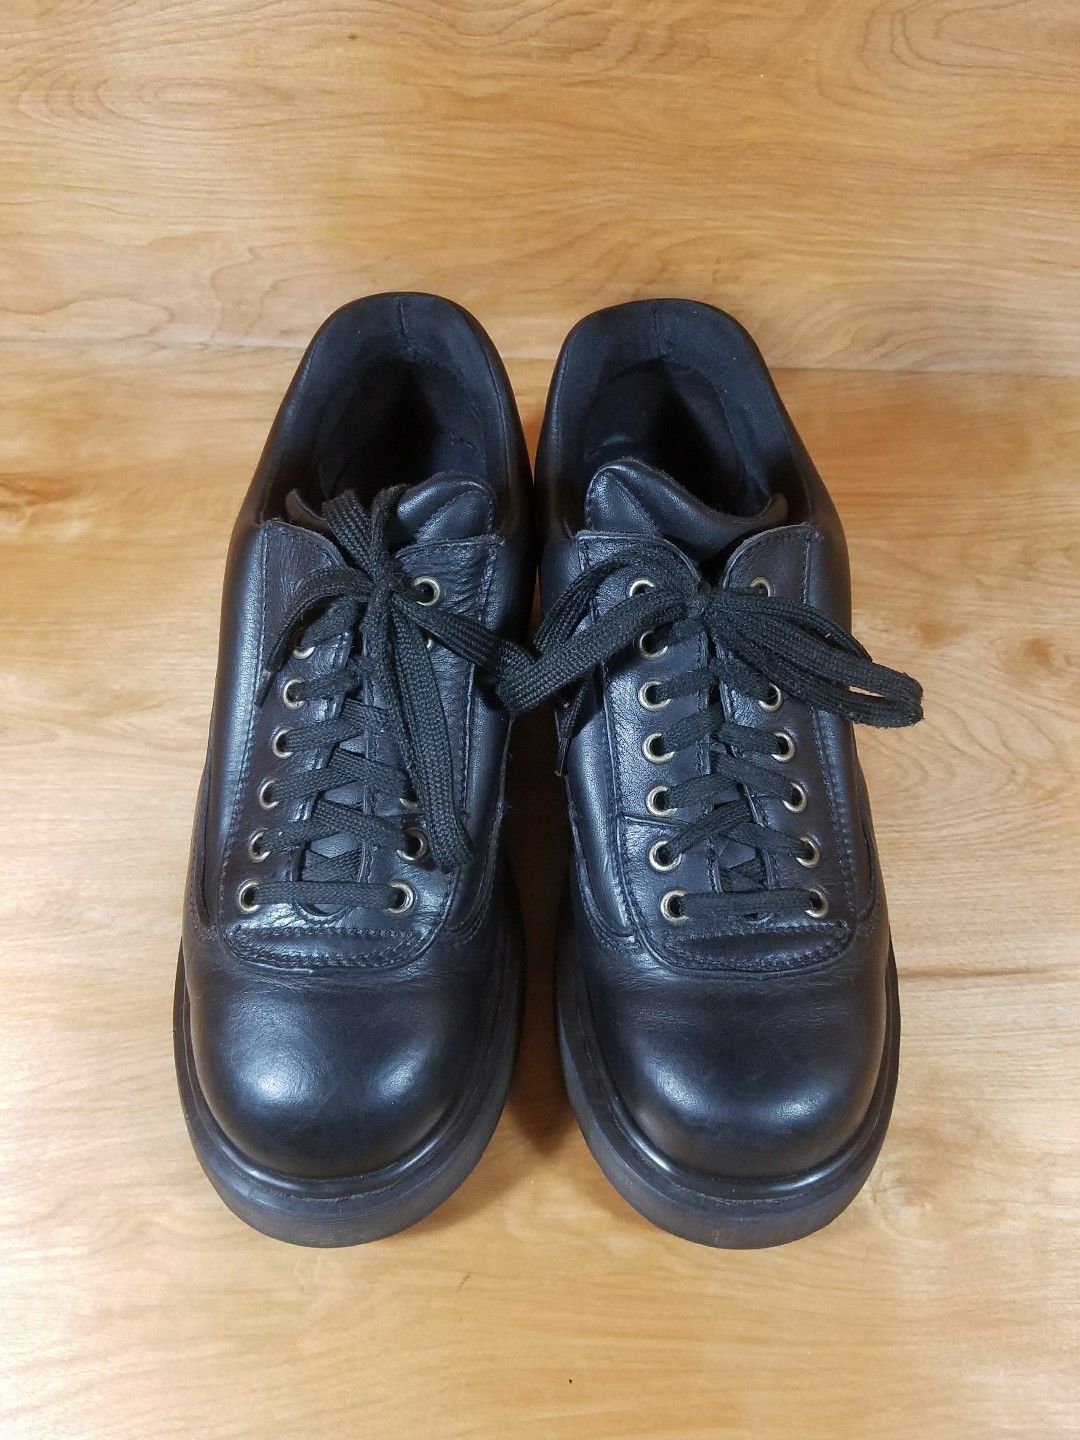 DM's Dr. Marten Airware Men's Size 8 Shoe Black Leather RARE #8591 ...